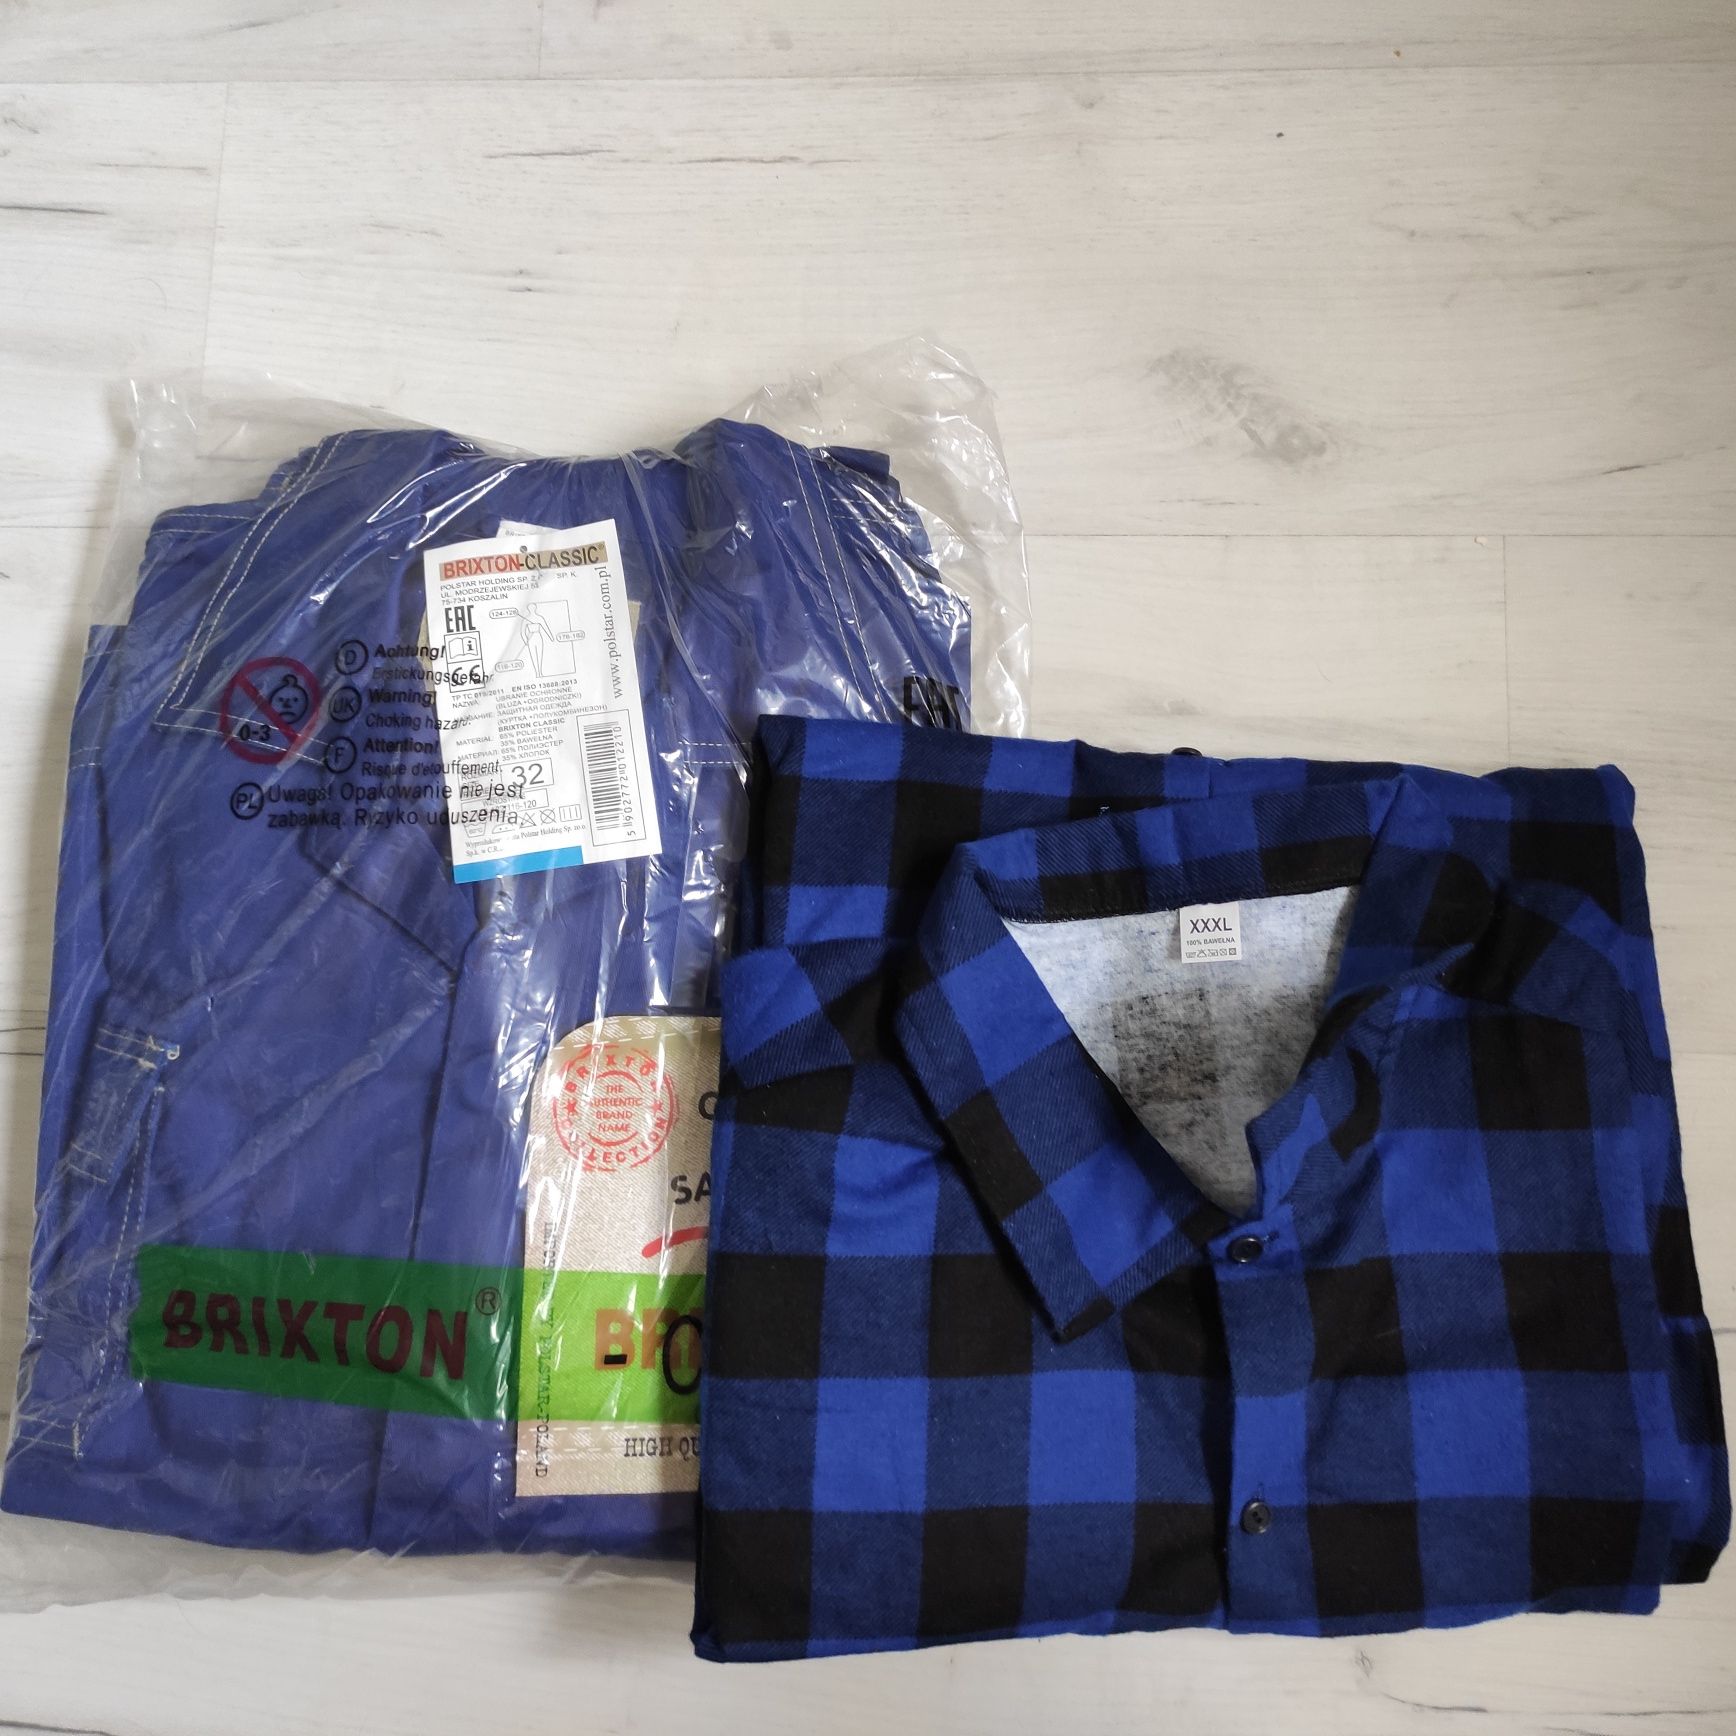 Odzież robocza Brixton Classic bluza+ogrodniczki+ koszula 176-182